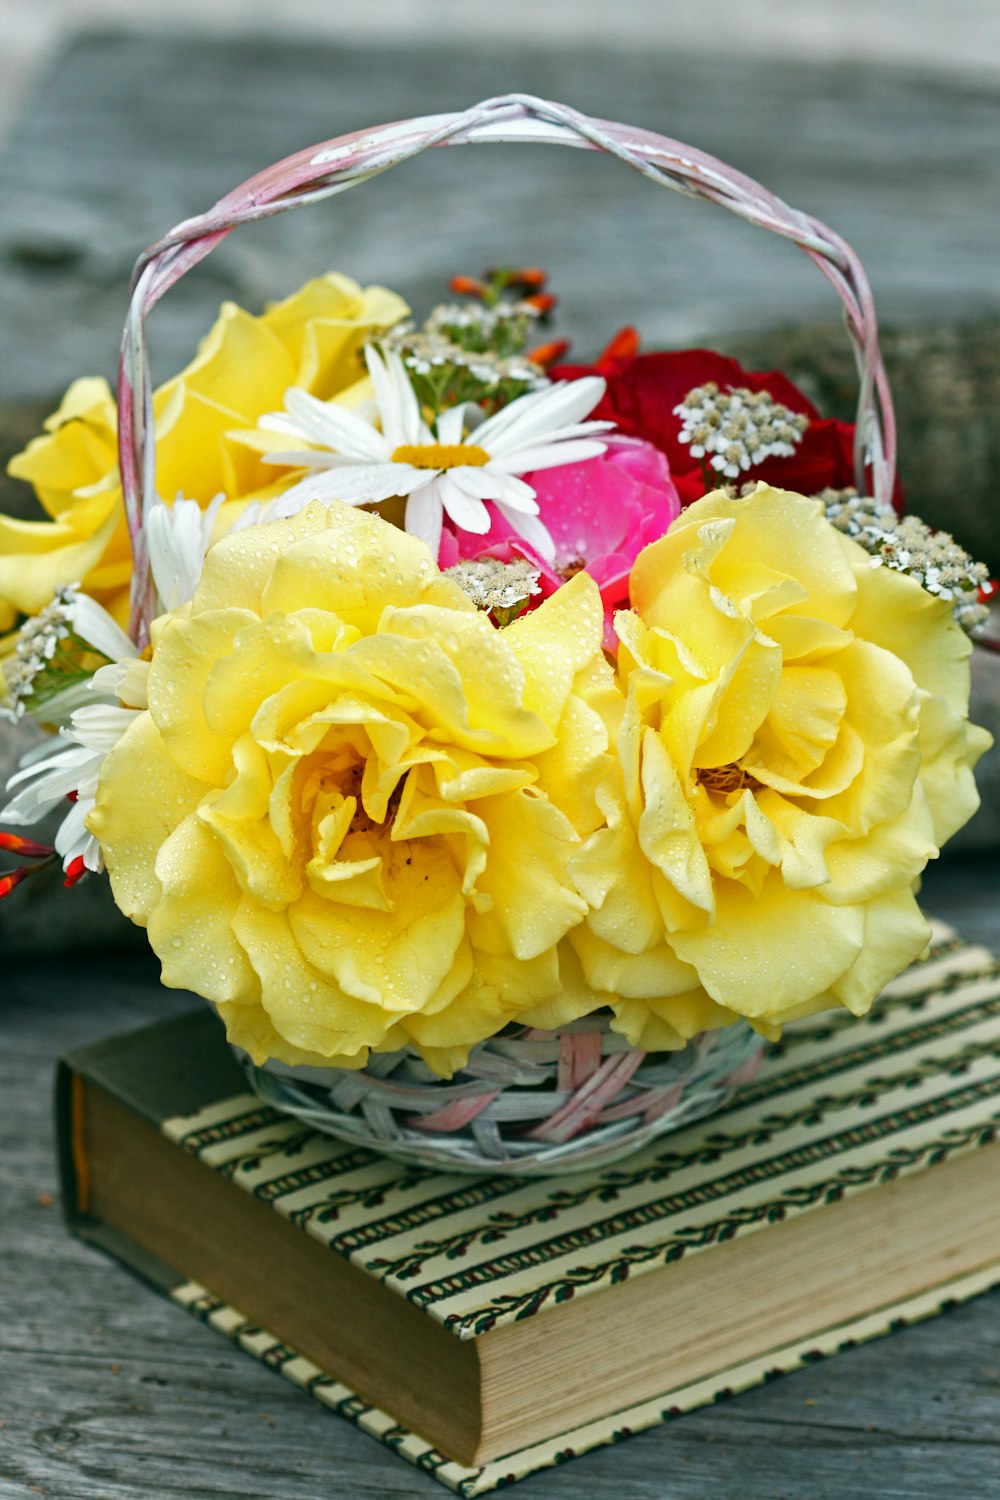 fiore di rosa gialla in cesto sul libro